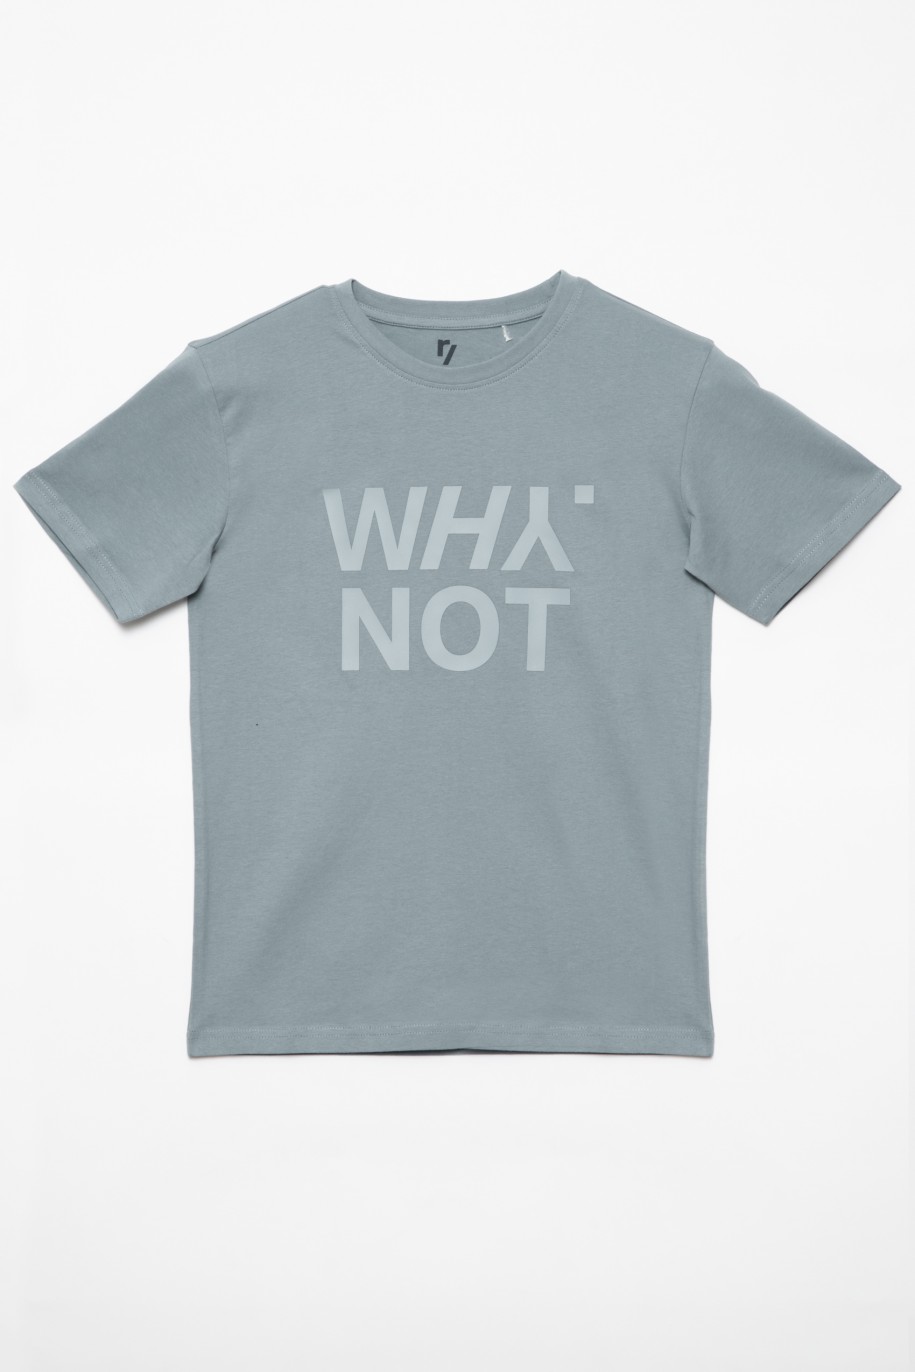 Szary t-shirt dla chłopaka z matowym nadrukiem WHY NOT - 32185